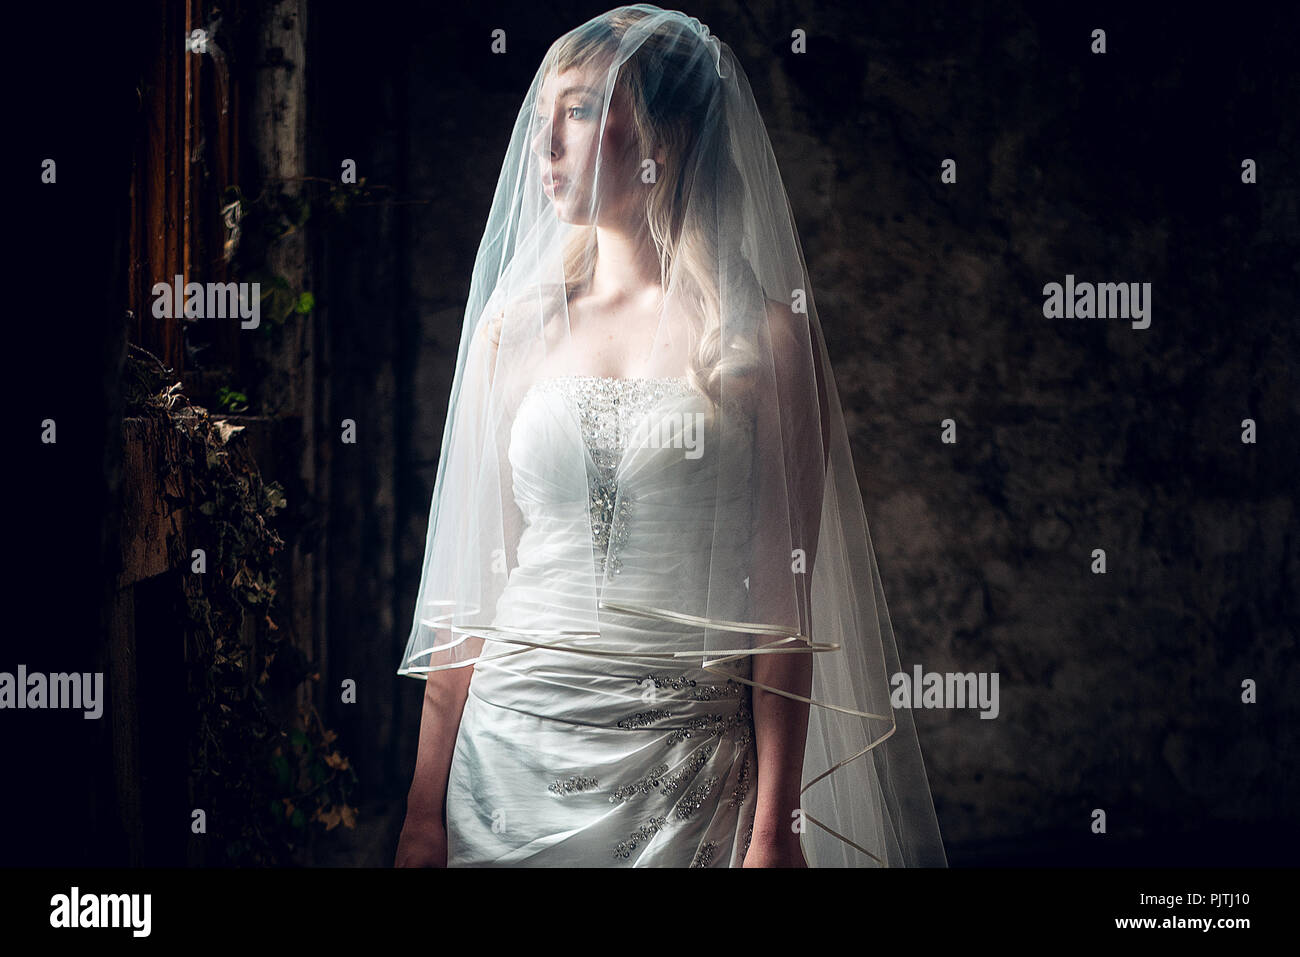 La mariée se tient dans sa robe de mariée et voile, regardant par la fenêtre d'une maison abandonnée Banque D'Images